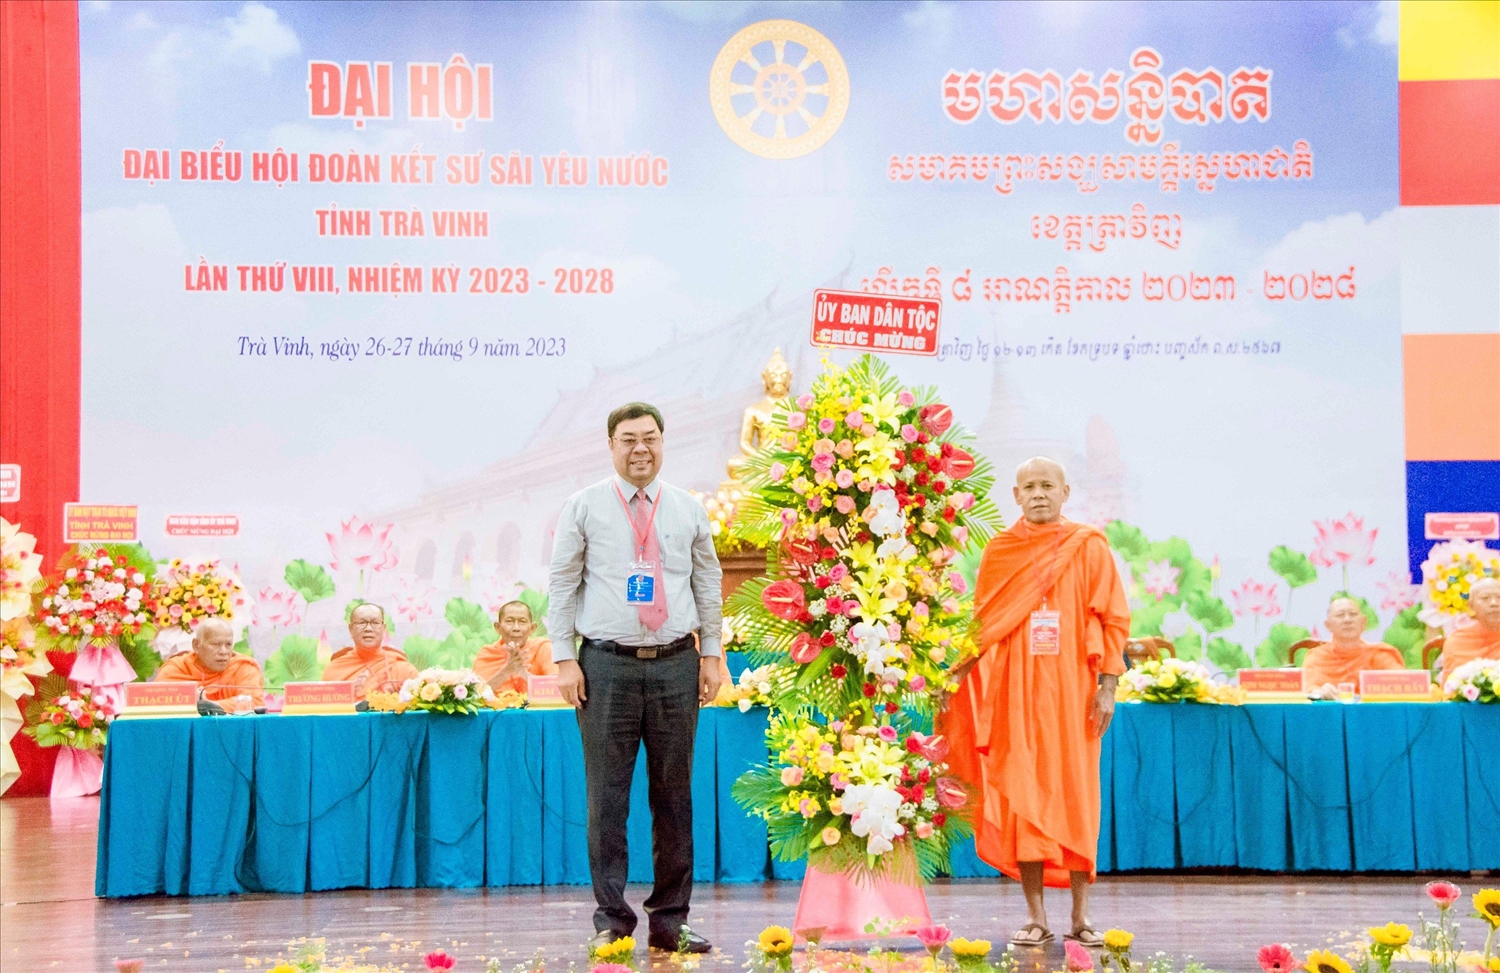 Ông Tào Việt Thắng, Phó Vụ trưởng Vụ Công tác dân tộc địa phương thuộc Ủy ban Dân tộc tặng hoa chúc mừng Đại hội